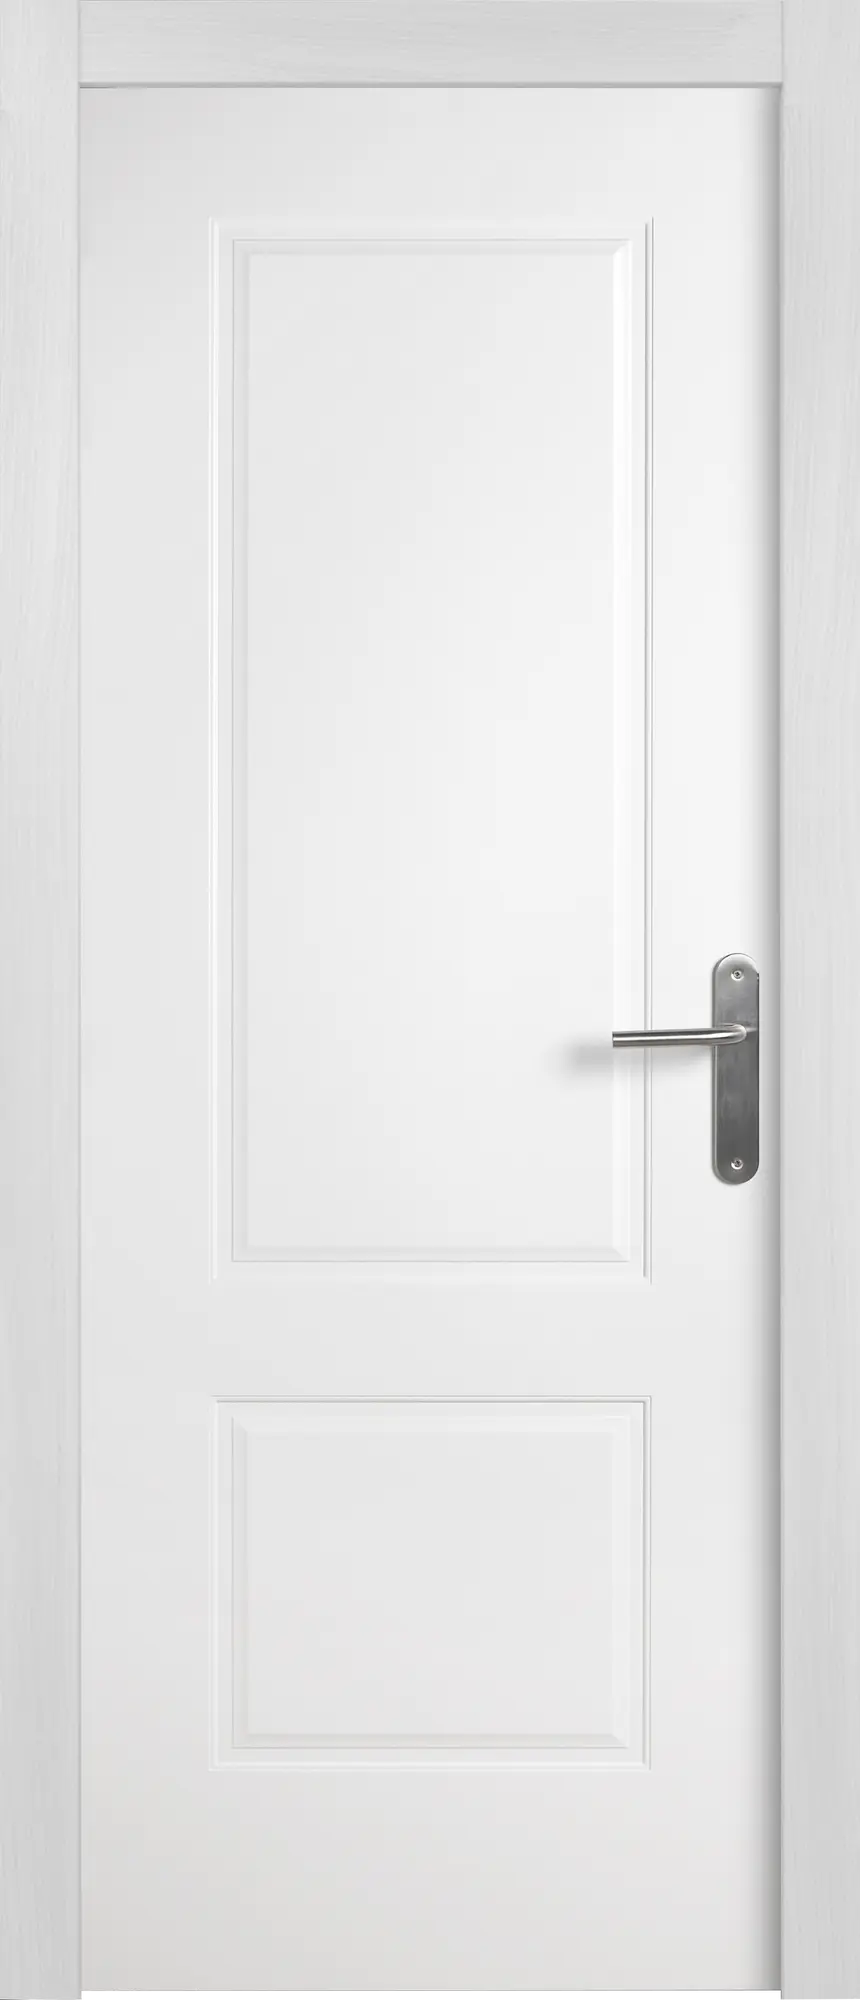 Puerta marsella plus blanco apertura izquierda 9x72.5cm